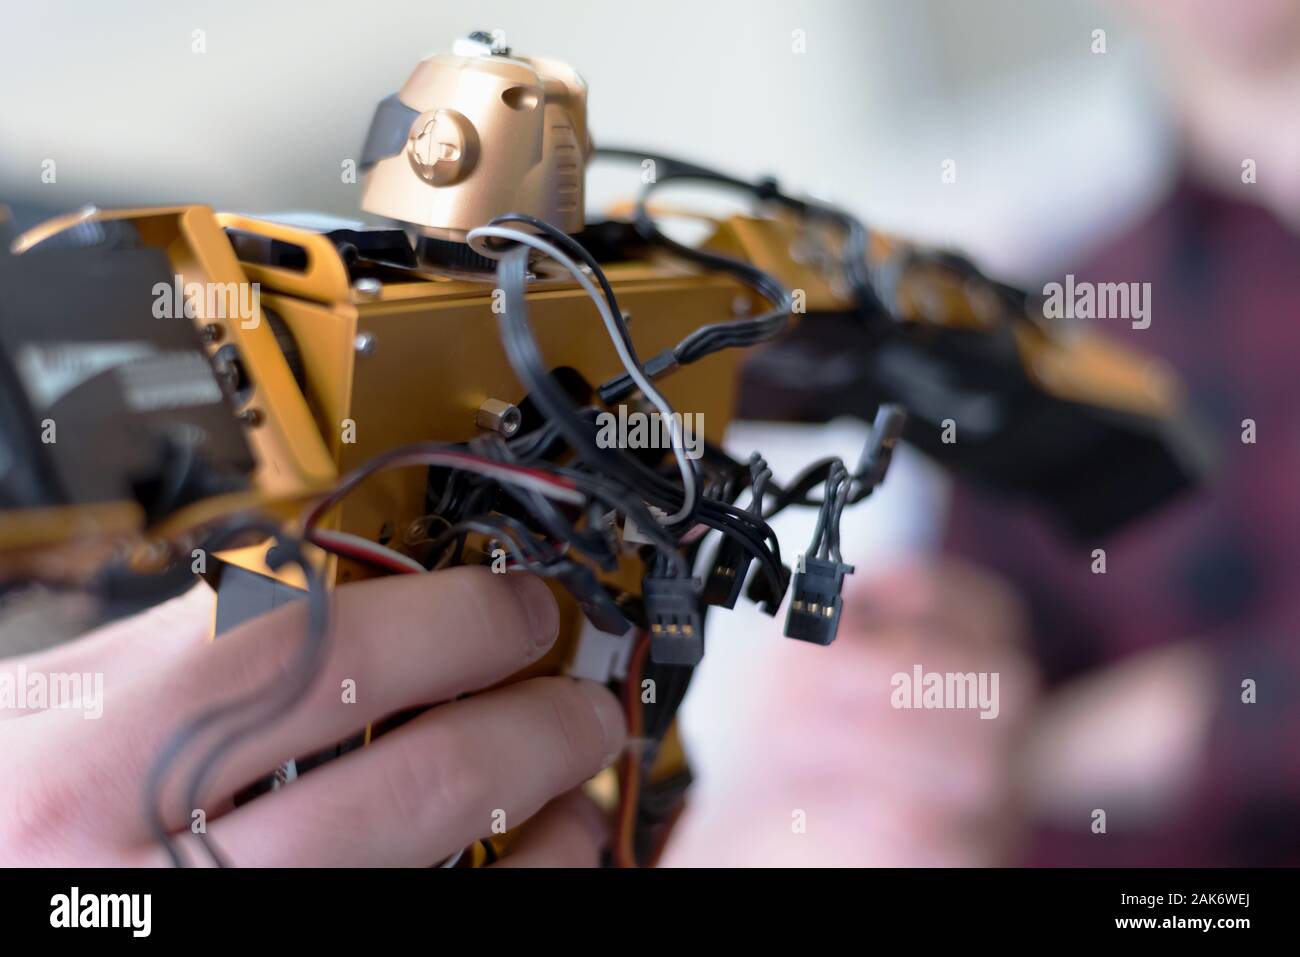 Jeune femme ingénieur travaillant sur le projet robotique. Ingénieur chercheur conçoit des petits robot humain, paramètres de l'intelligence artificielle robot humanoïde Banque D'Images